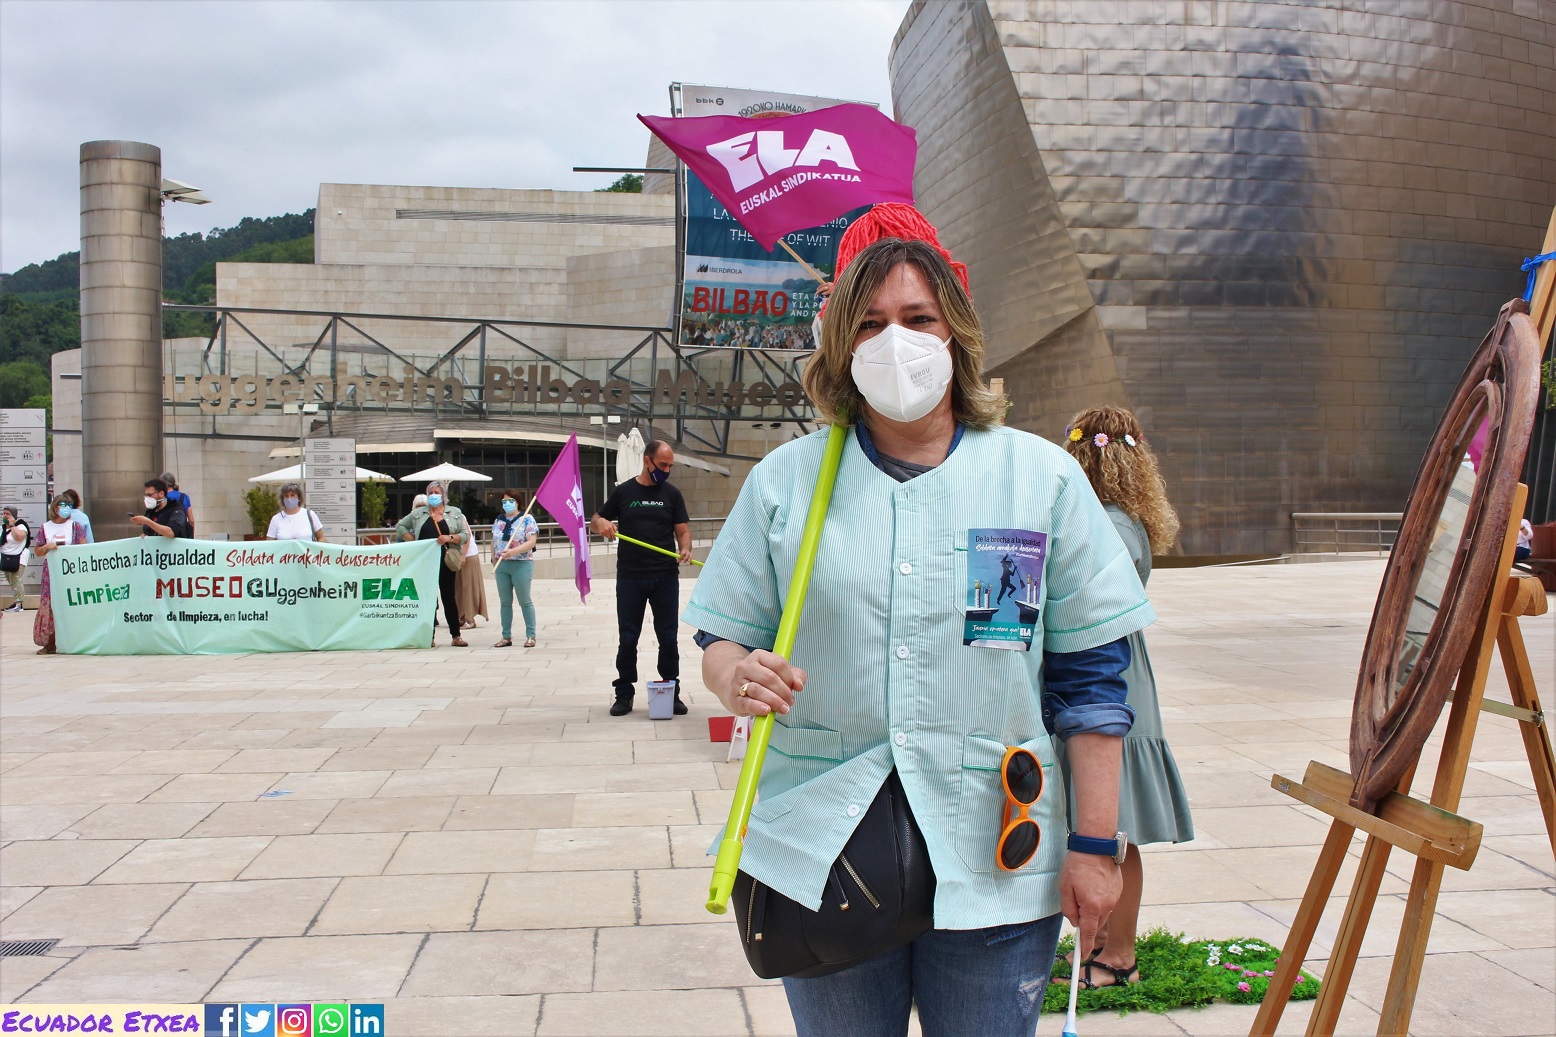 Limpiadoras-museo-Guggenheim-Bilbao-huelga-Arte-precariedad-dinero-público-ferrovial-servicios-brecha-salarial-mujeres-gobierno-vasco-diputación-ayuntamiento